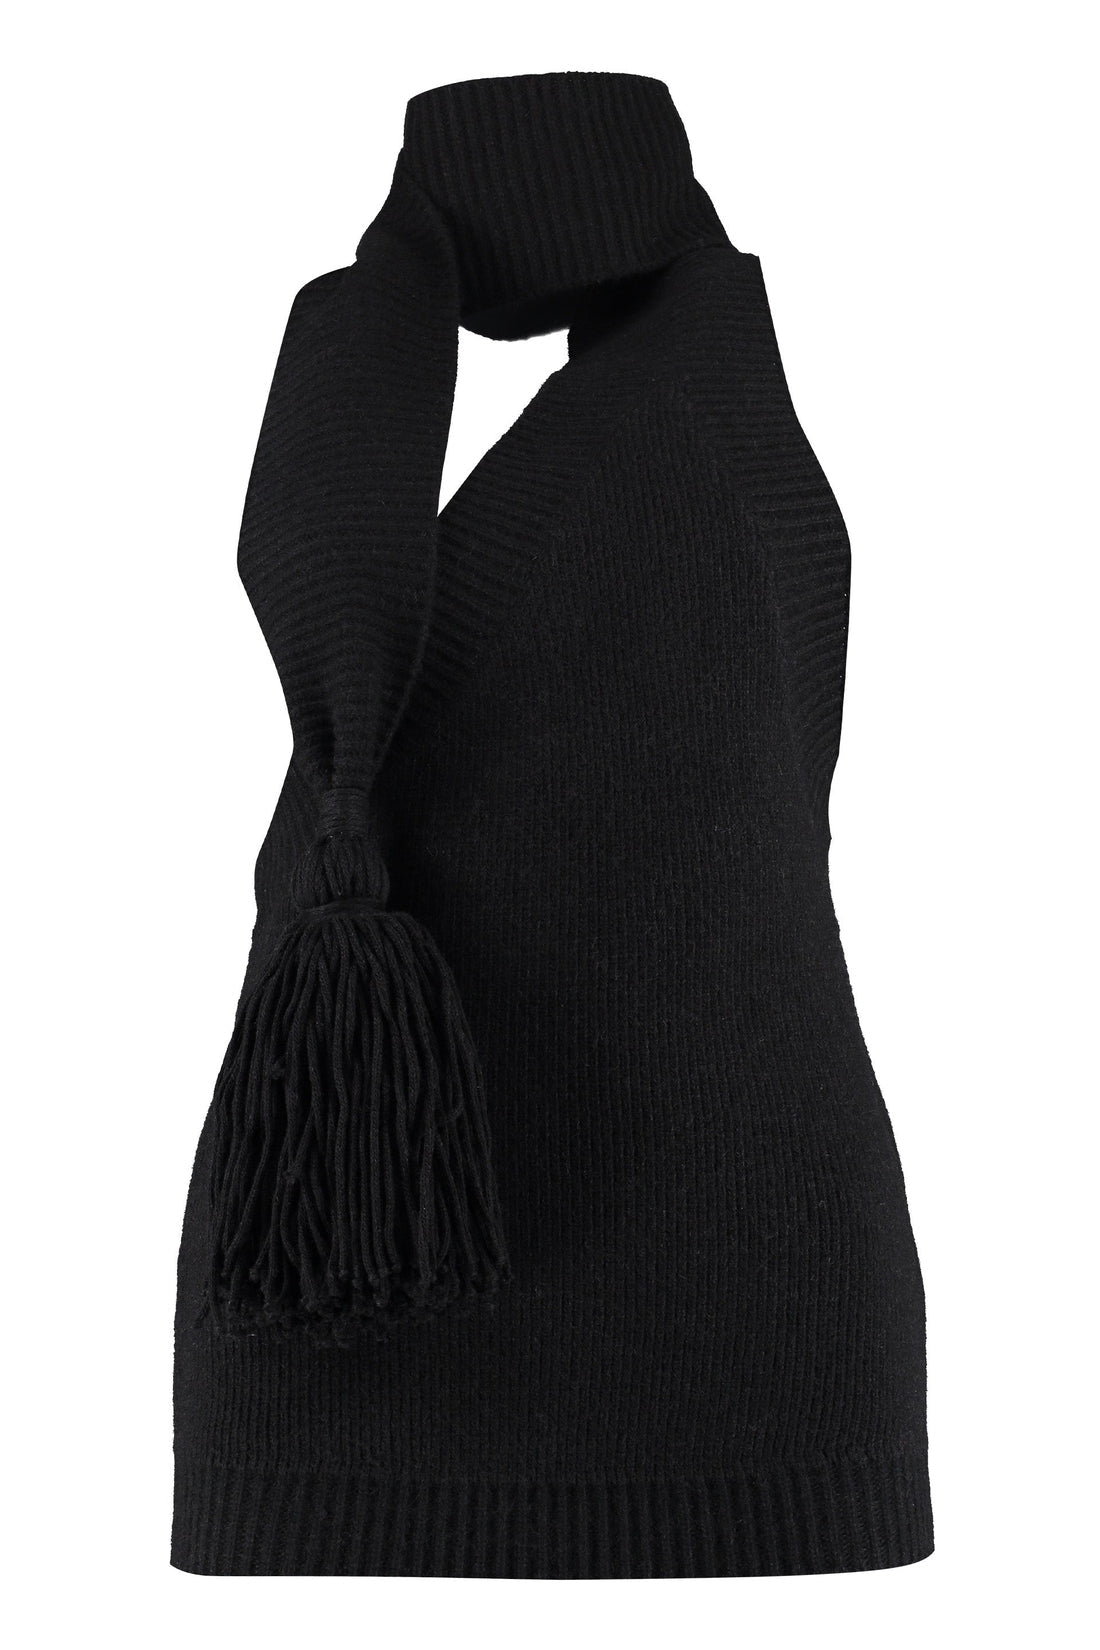 Bottega Veneta-OUTLET-SALE-Knitted one-shoulder top-ARCHIVIST